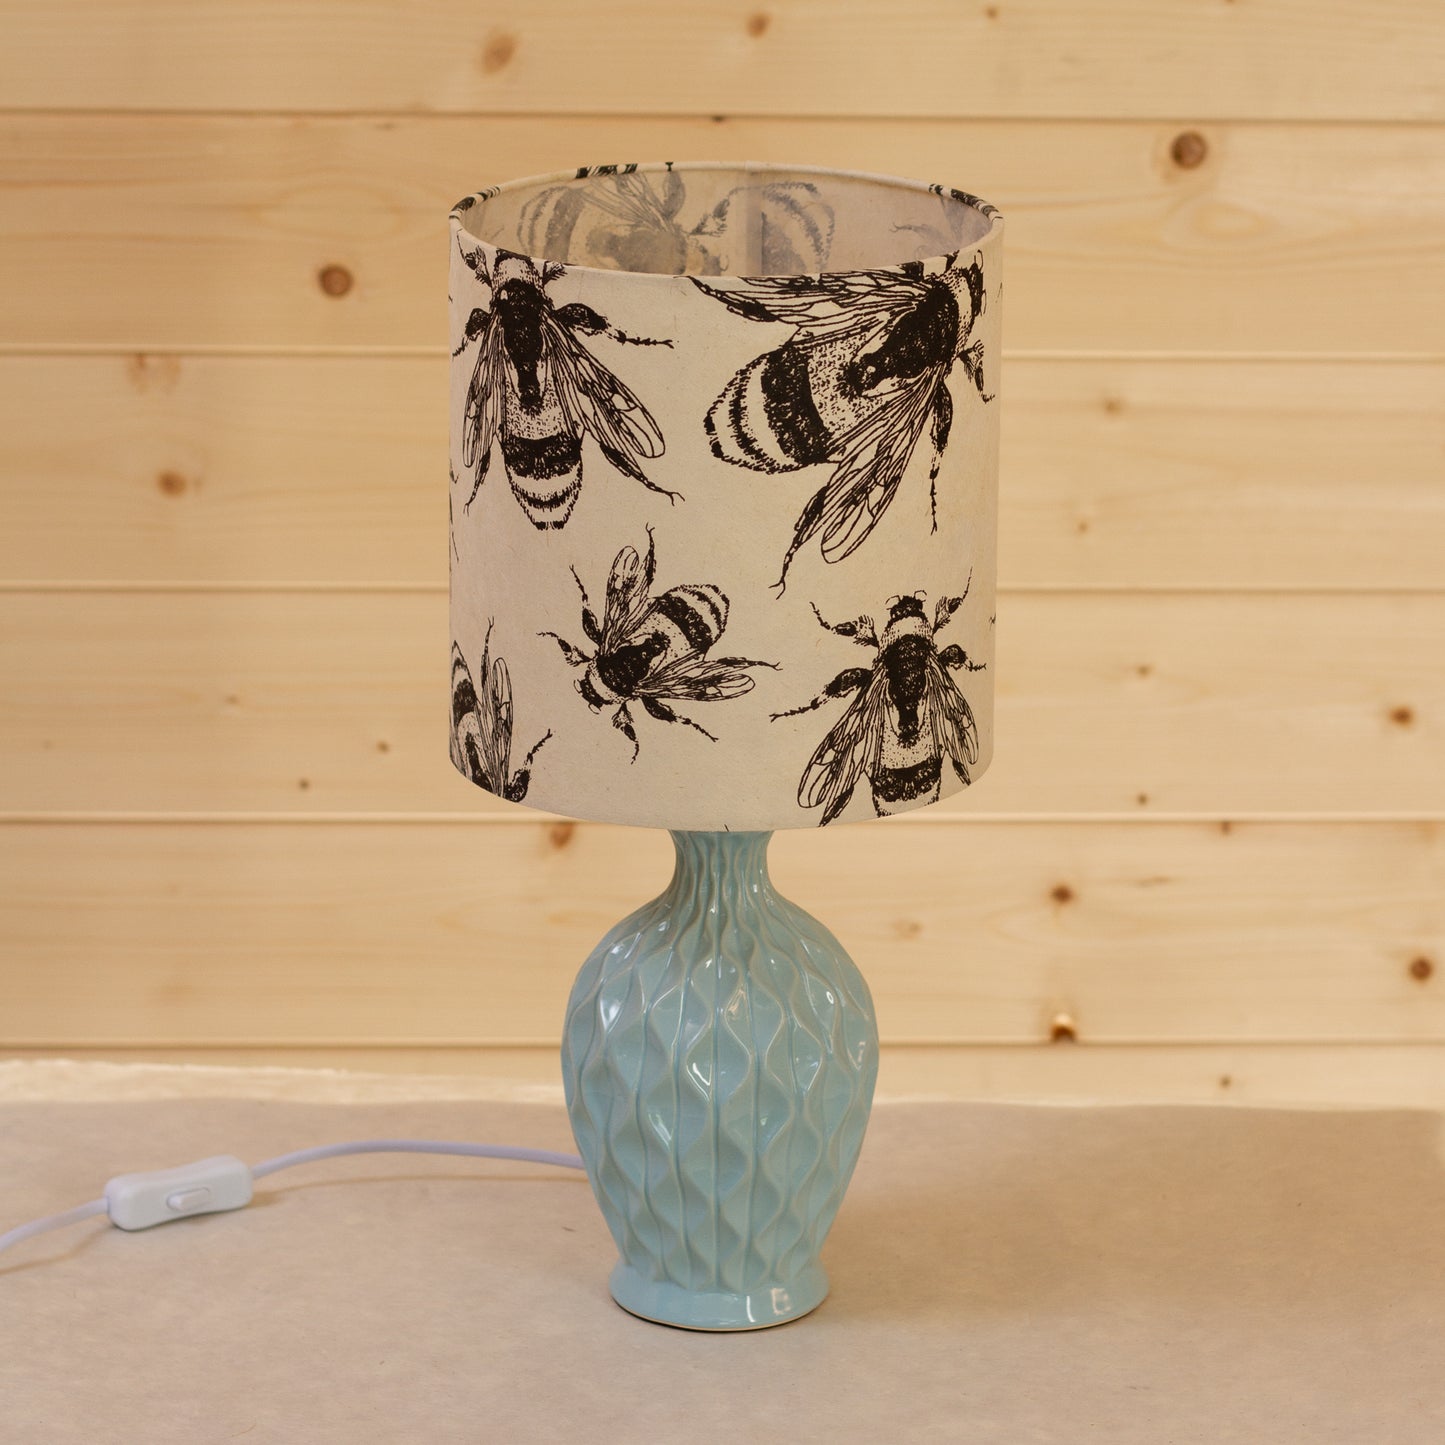 Yarra Ceramic Table Lamp Duckegg Blue - Drum Lampshade (20cm x 20cm) in P42 Bees